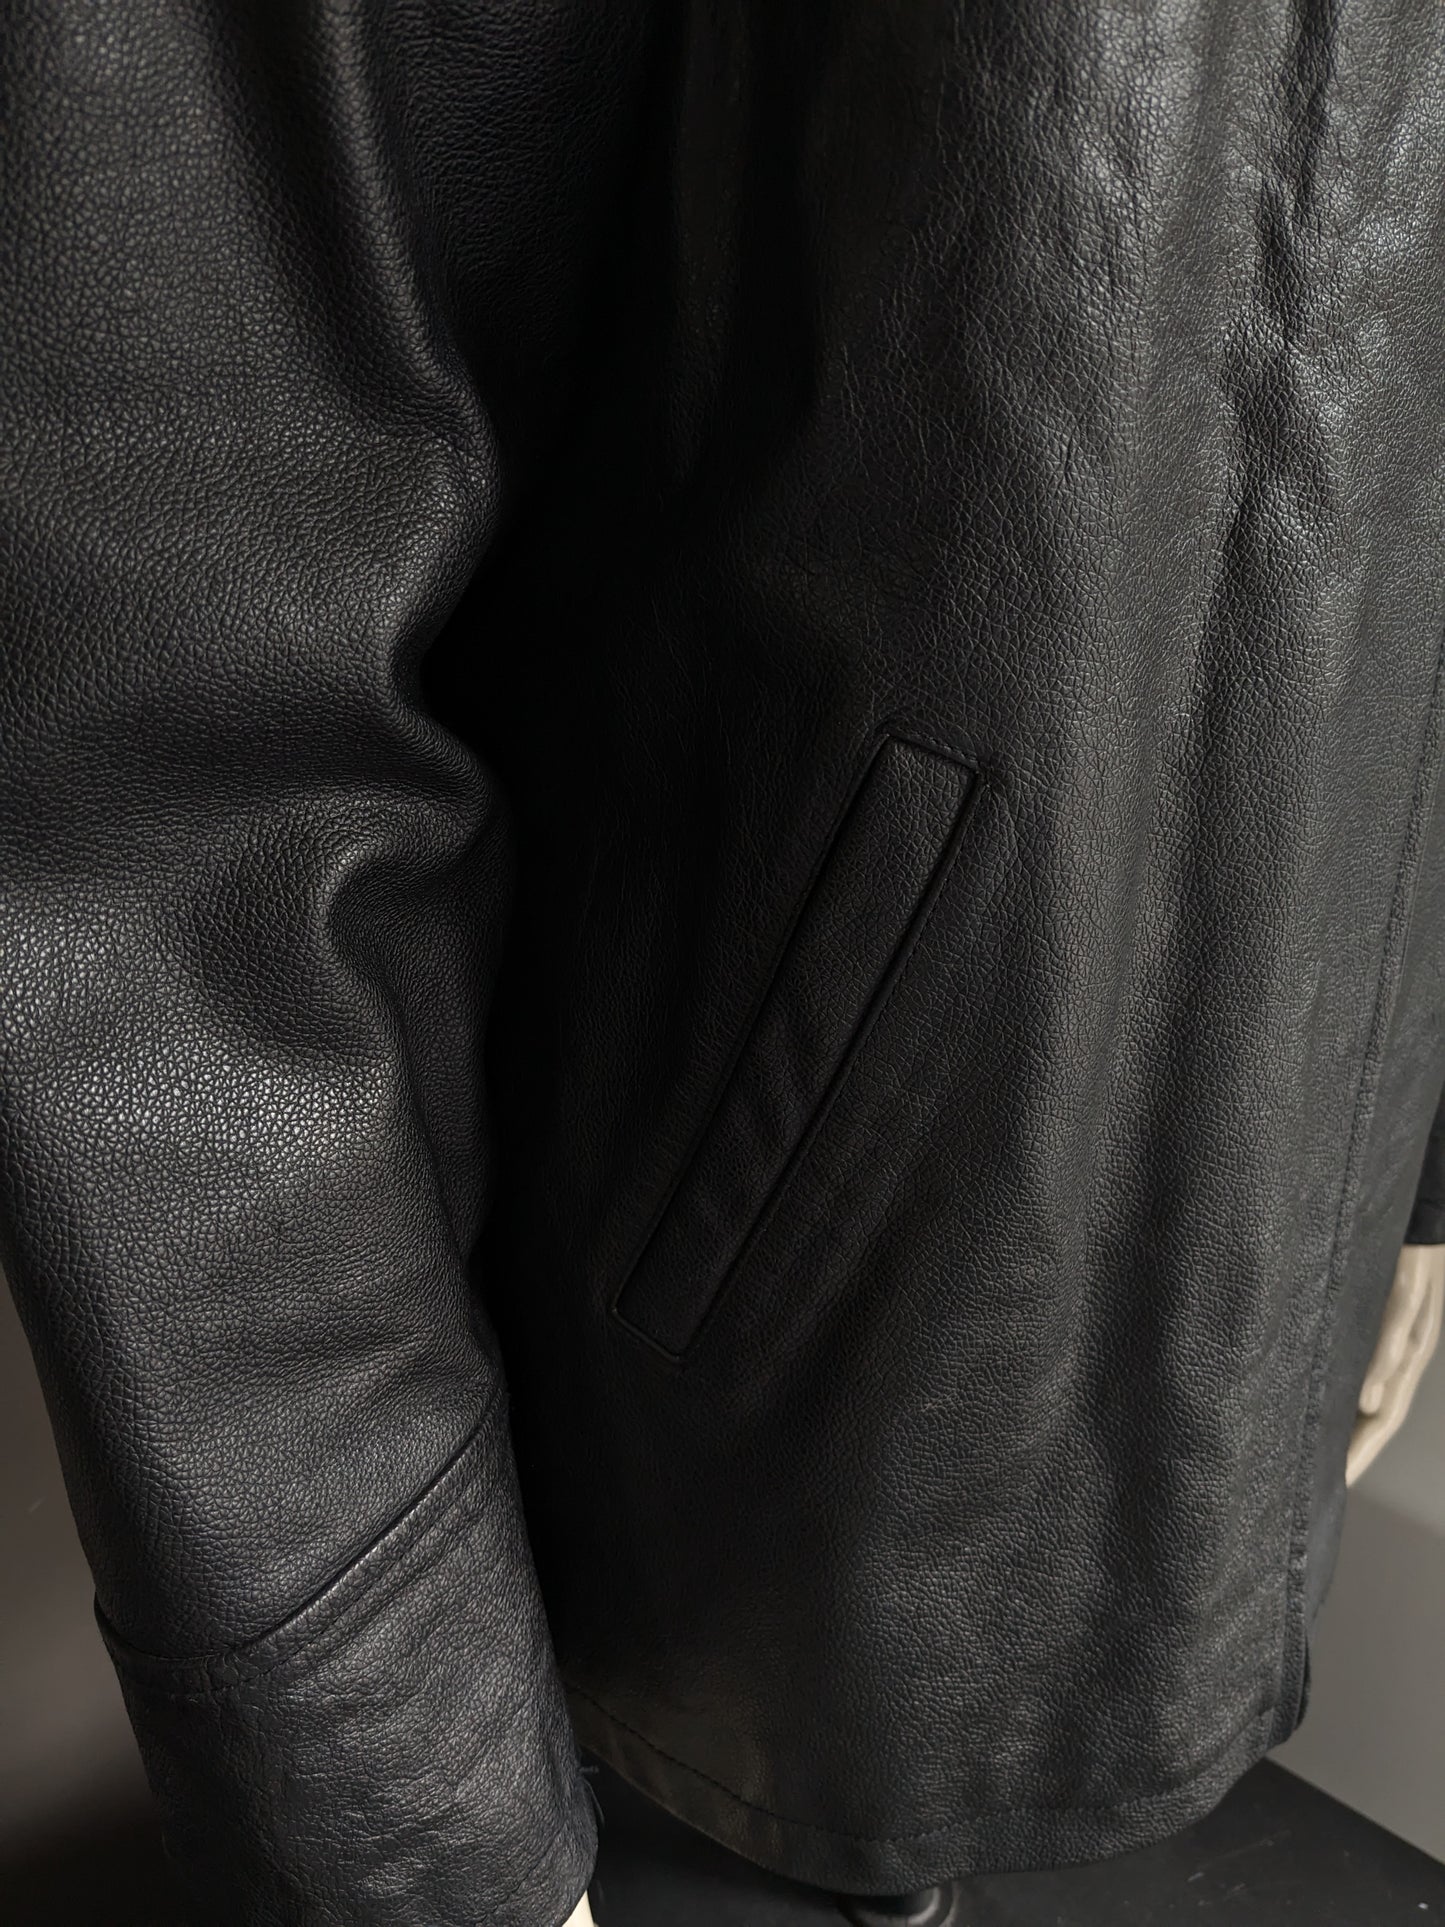 Revolution leather jacket / jacket. Black colored. Size L.